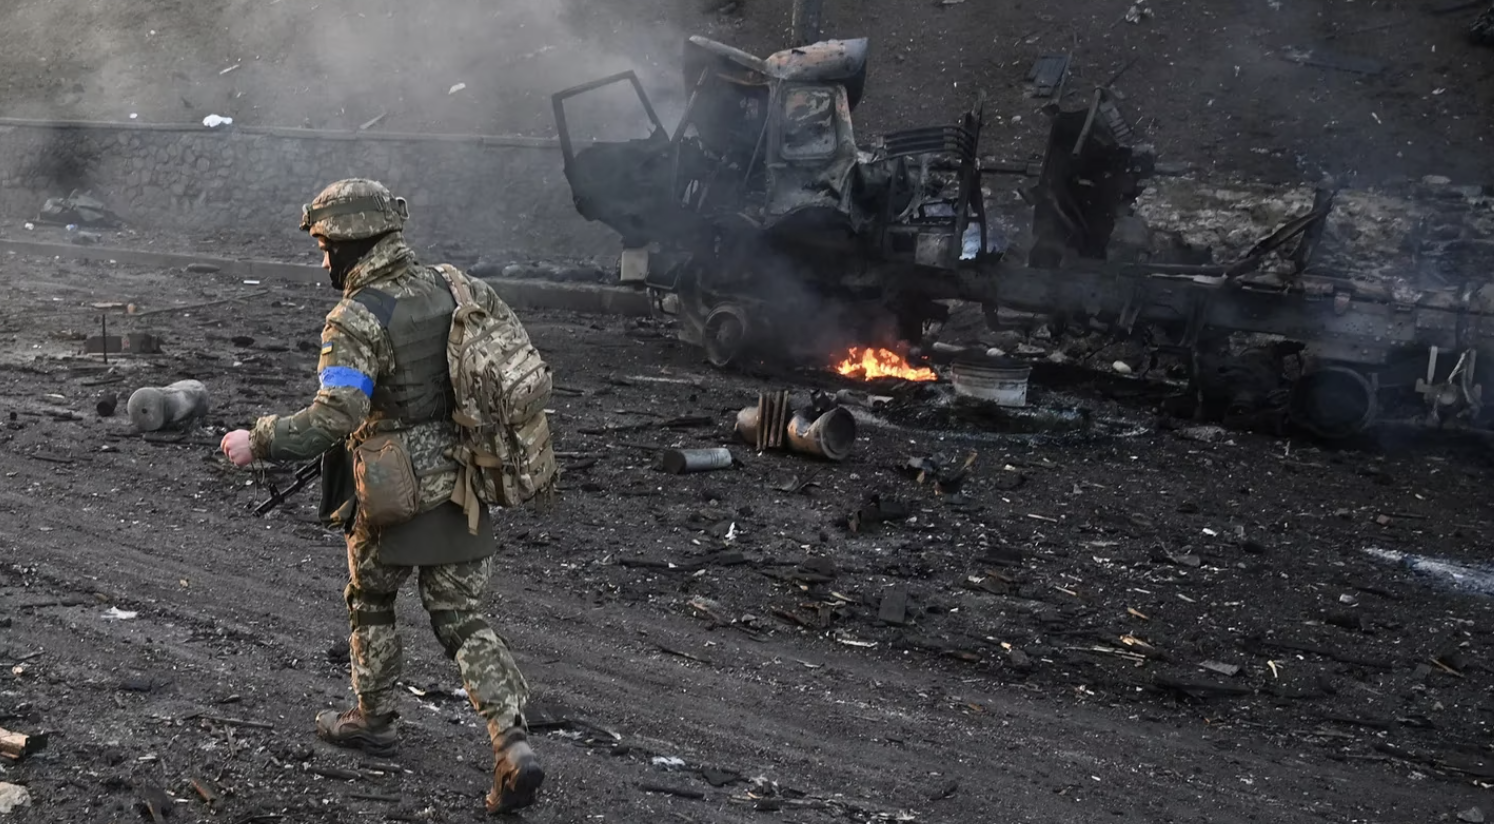 Guerra en Ucrania: la escalada bélica, la ofensiva misilística ante la llegada del invierno a la región